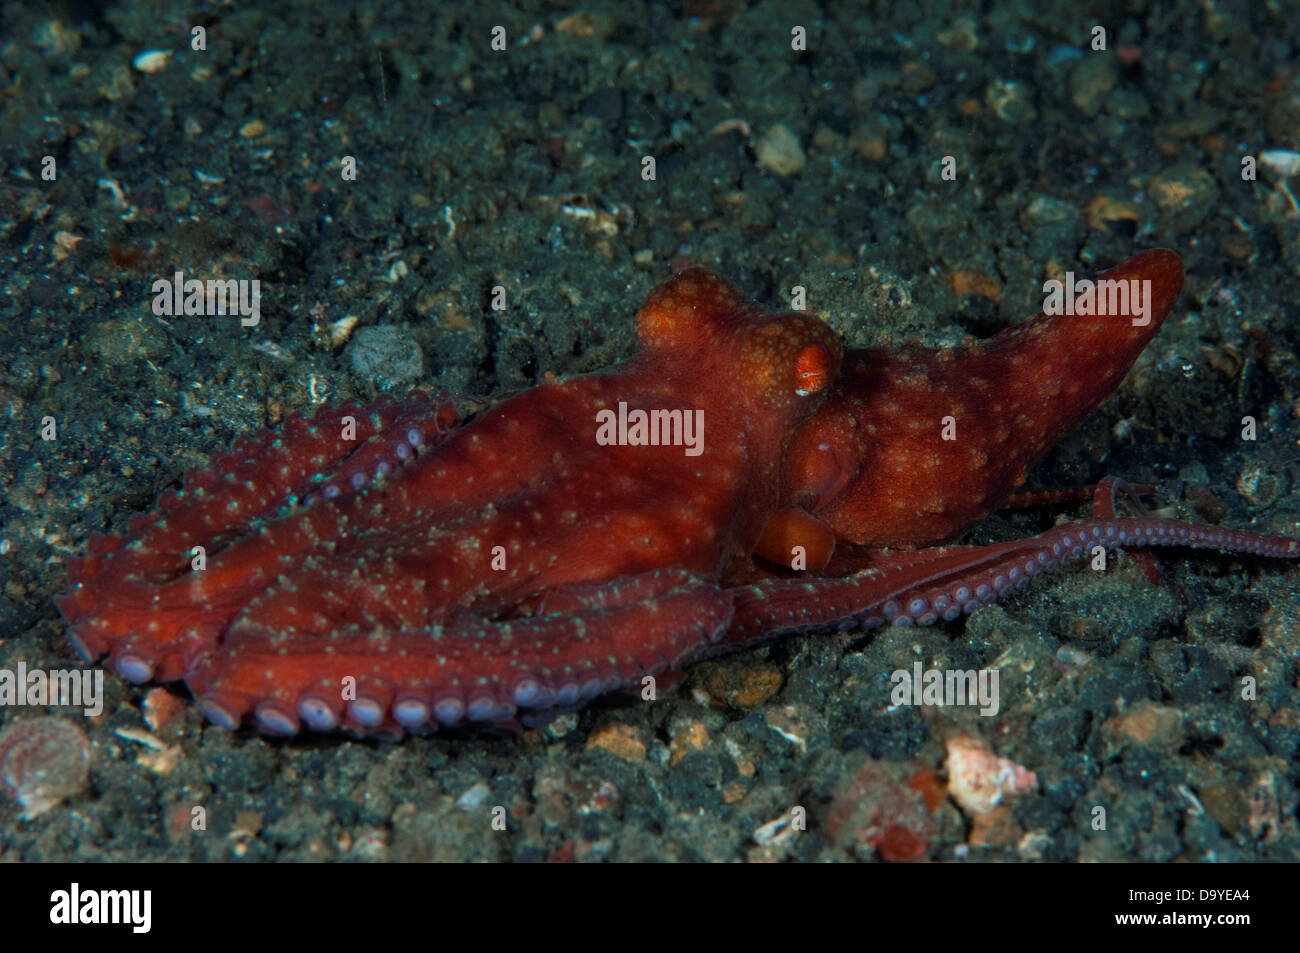 La noche estrellada el pulpo (Octopus luteus) en arena negra, estrecho de Lembeh, Sulawesi, Indonesia Foto de stock